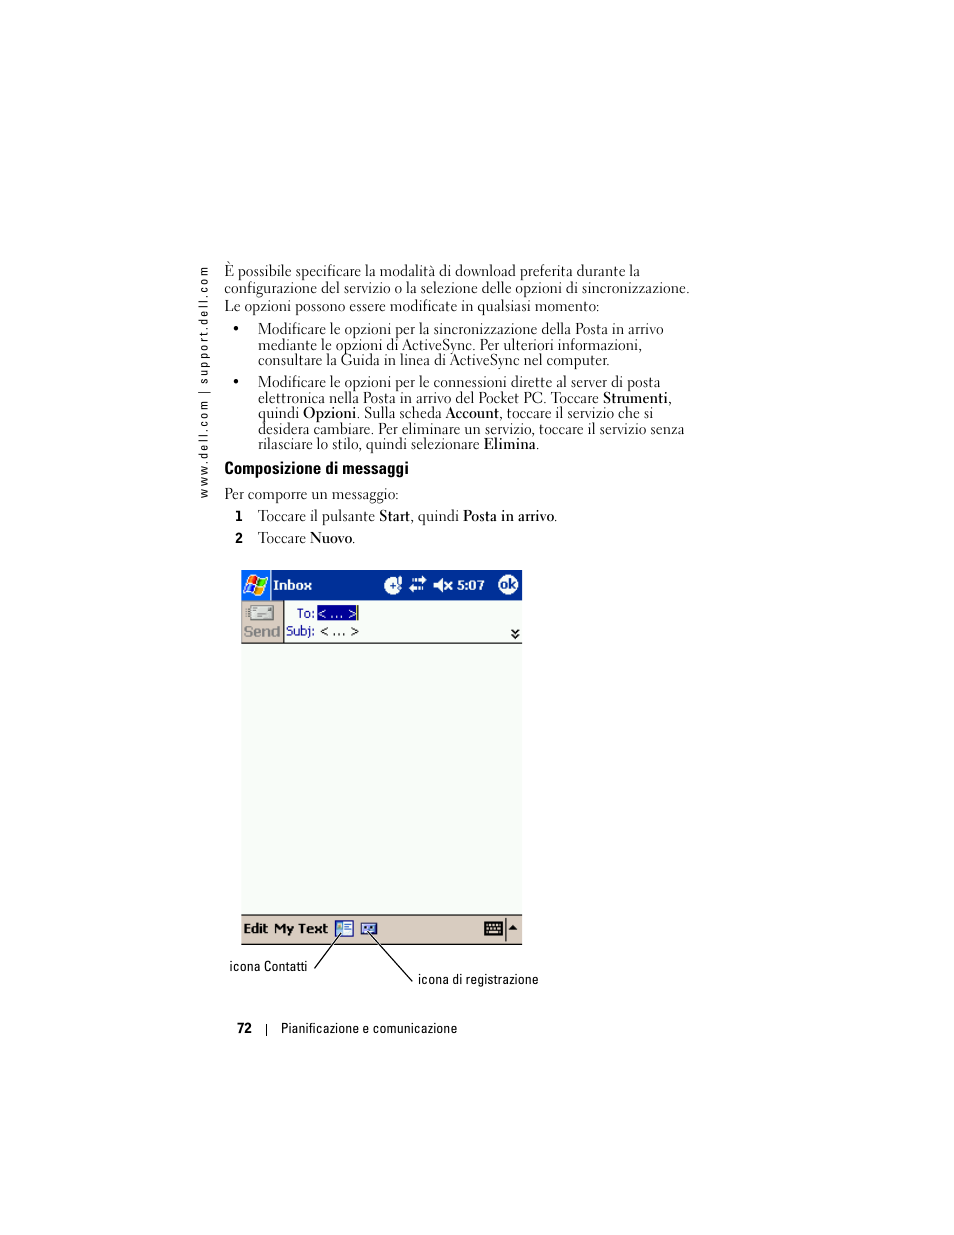 Composizione di messaggi | Dell AXIM X3 Manuale d'uso | Pagina 72 / 154